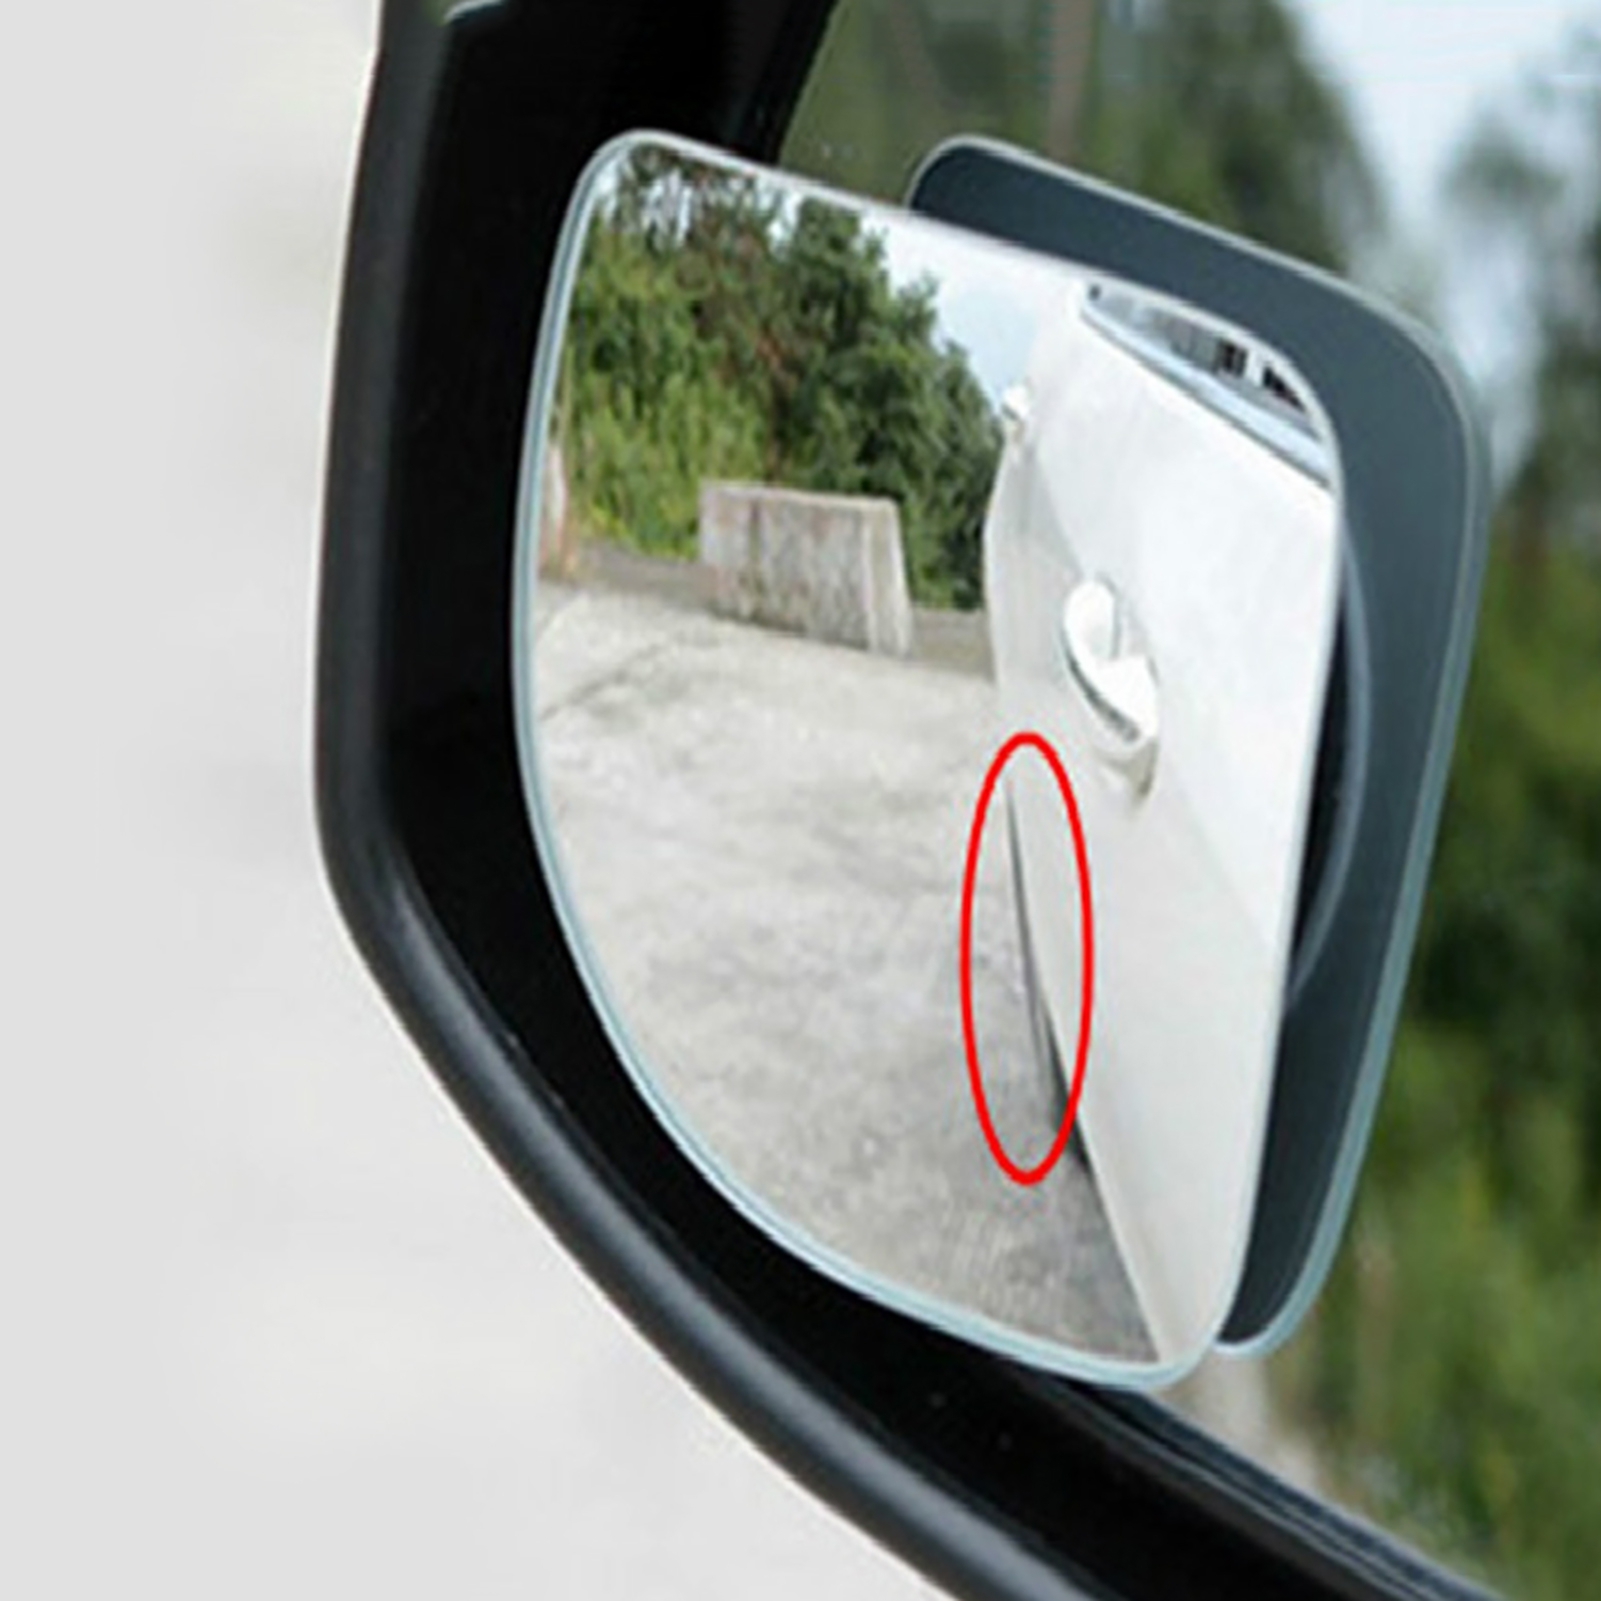 Правильно настроенные зеркала в машине фото